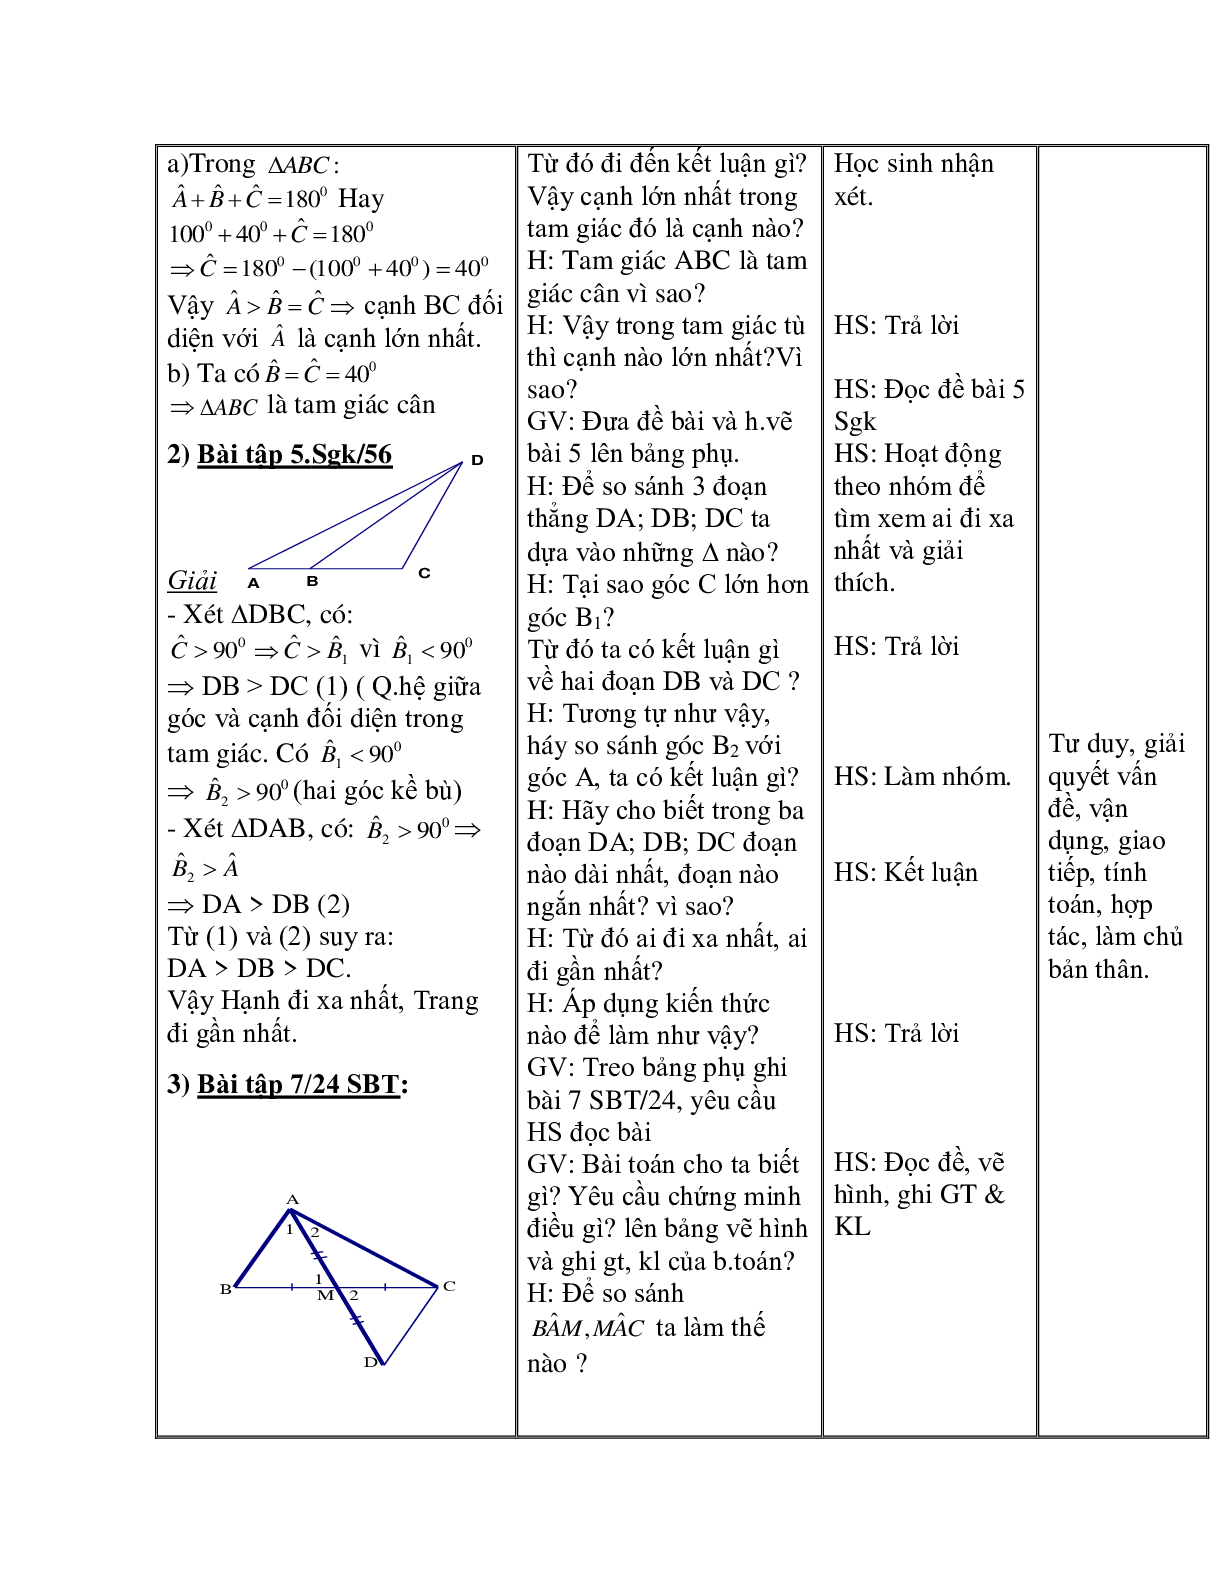 Giáo án Toán học 7 bài 1: Quan hệ giữa góc và cạnh đối diện trong một tam giác hay nhất (trang 8)